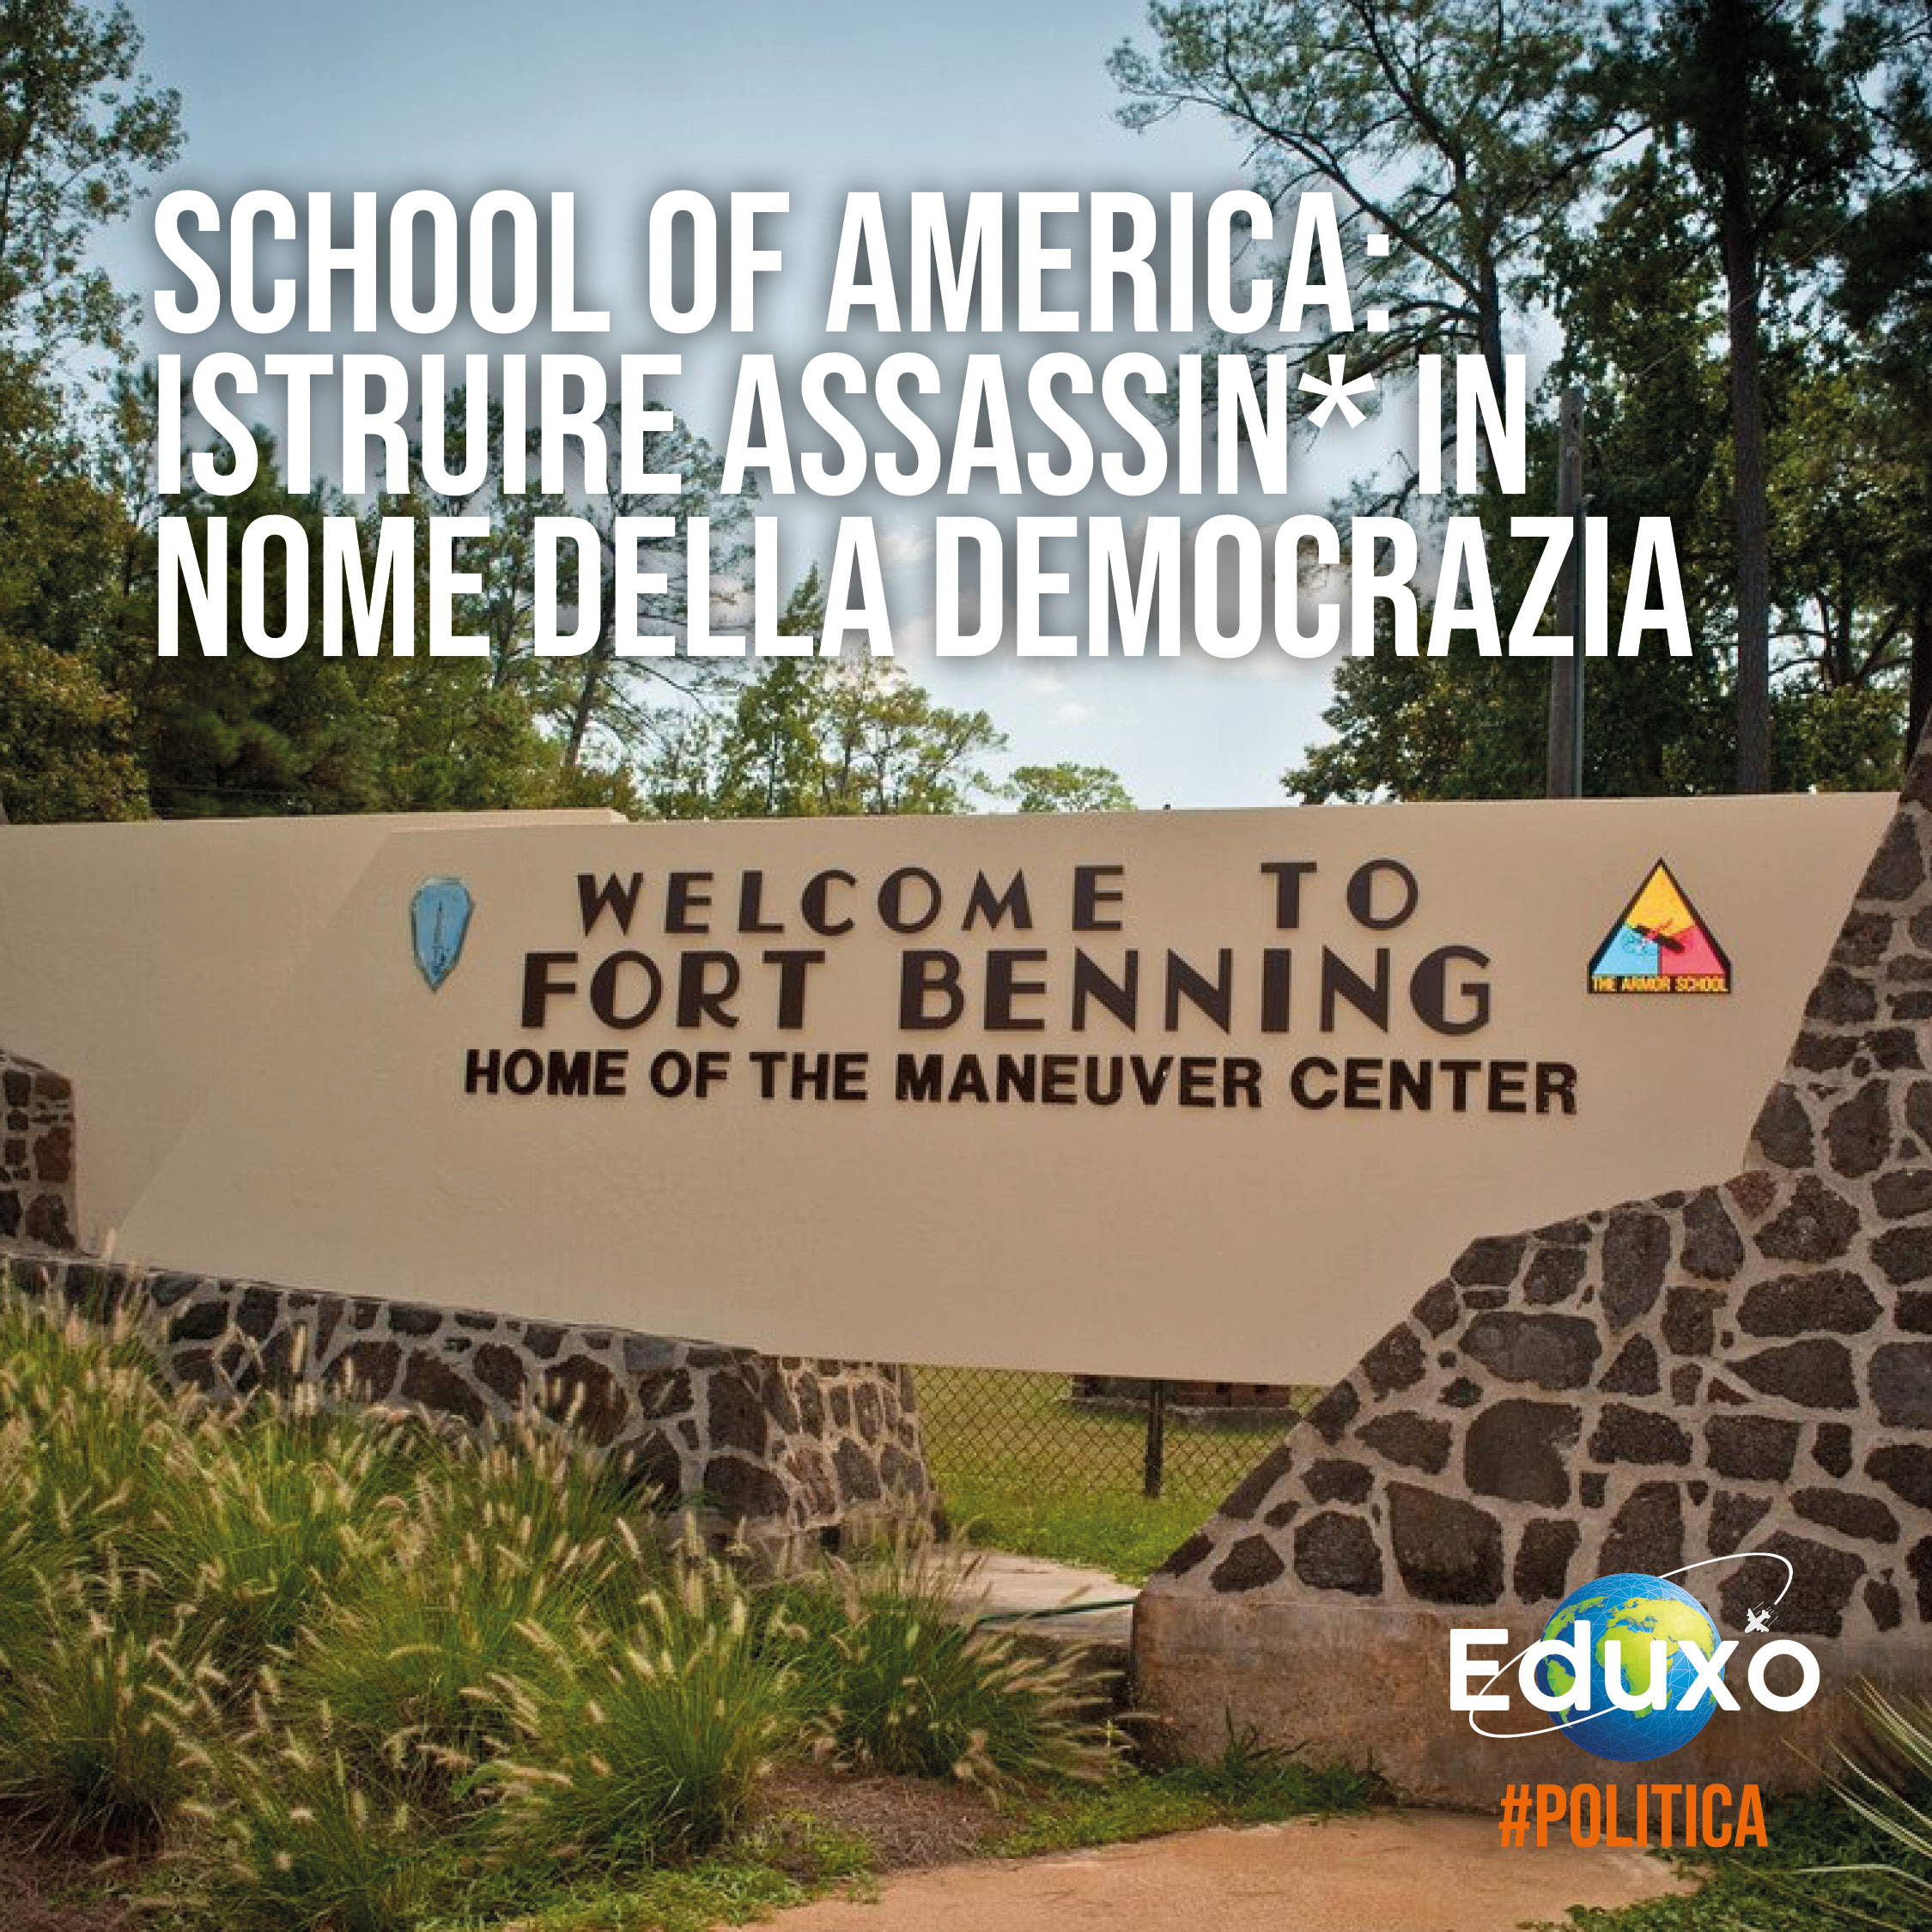 Al momento stai visualizzando School of America: istruire assassin* in nome della Democrazia